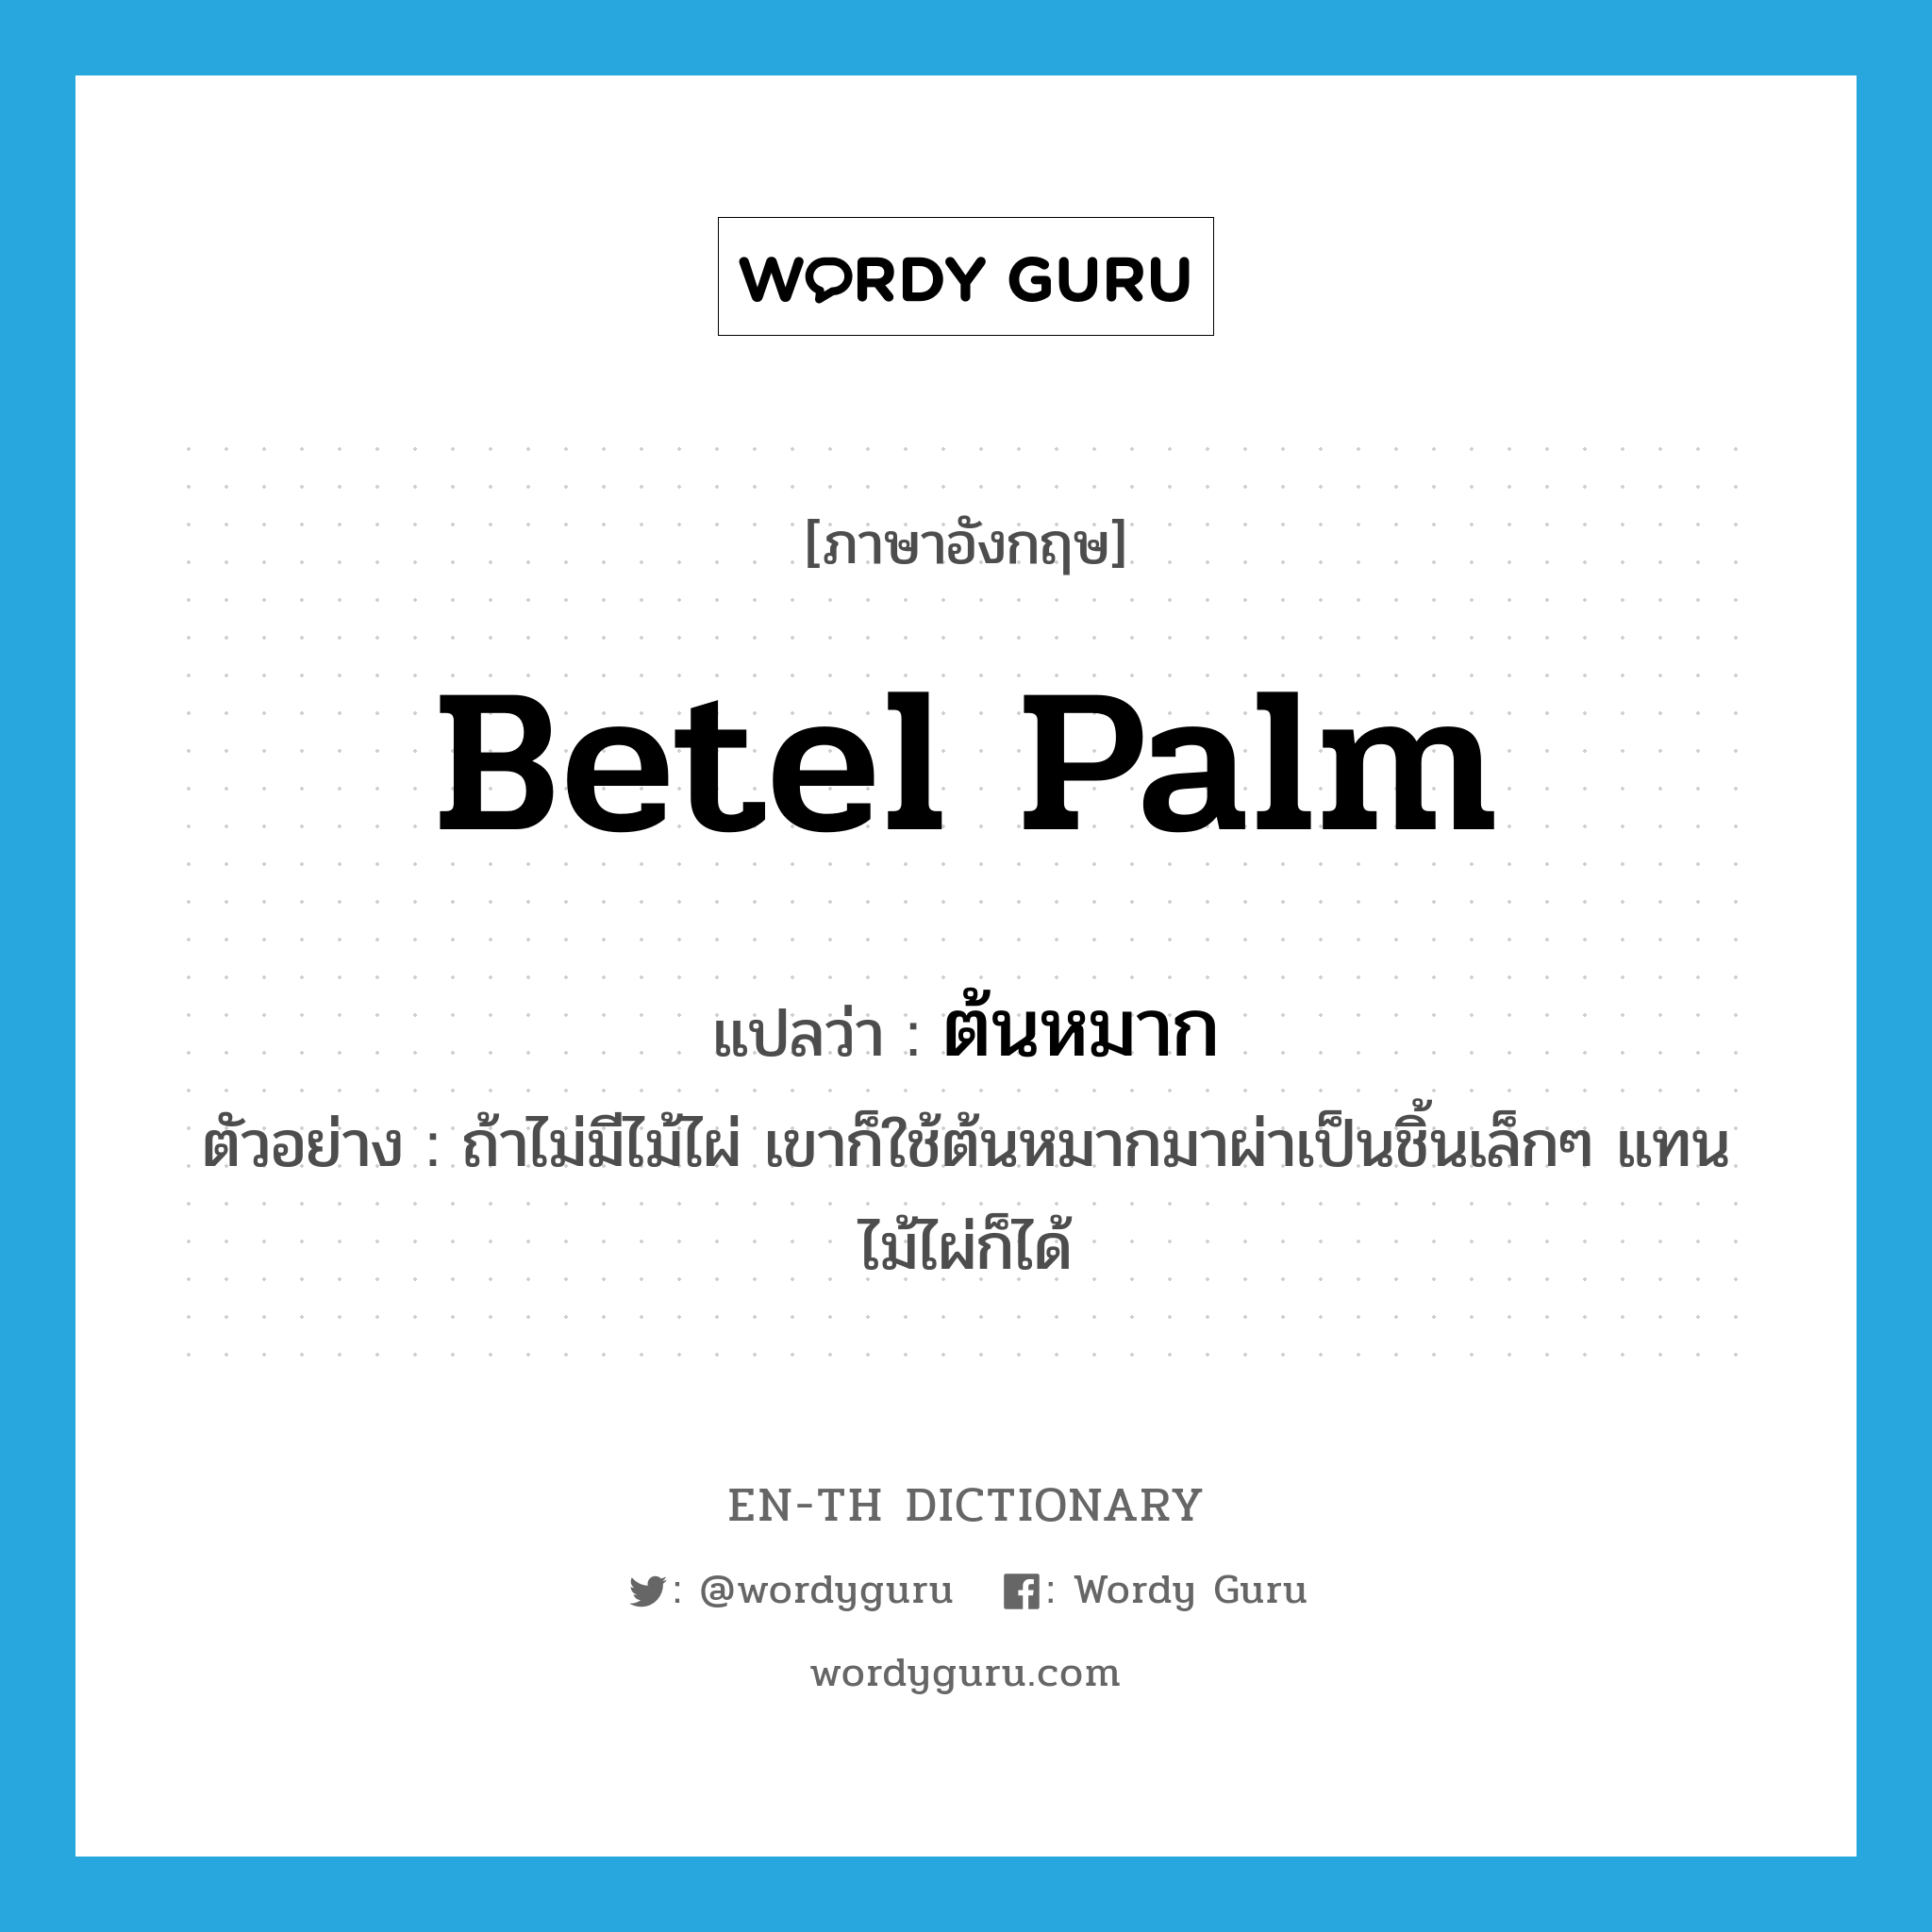 betel palm แปลว่า?, คำศัพท์ภาษาอังกฤษ betel palm แปลว่า ต้นหมาก ประเภท N ตัวอย่าง ถ้าไม่มีไม้ไผ่ เขาก็ใช้ต้นหมากมาผ่าเป็นชิ้นเล็กๆ แทนไม้ไผ่ก็ได้ หมวด N